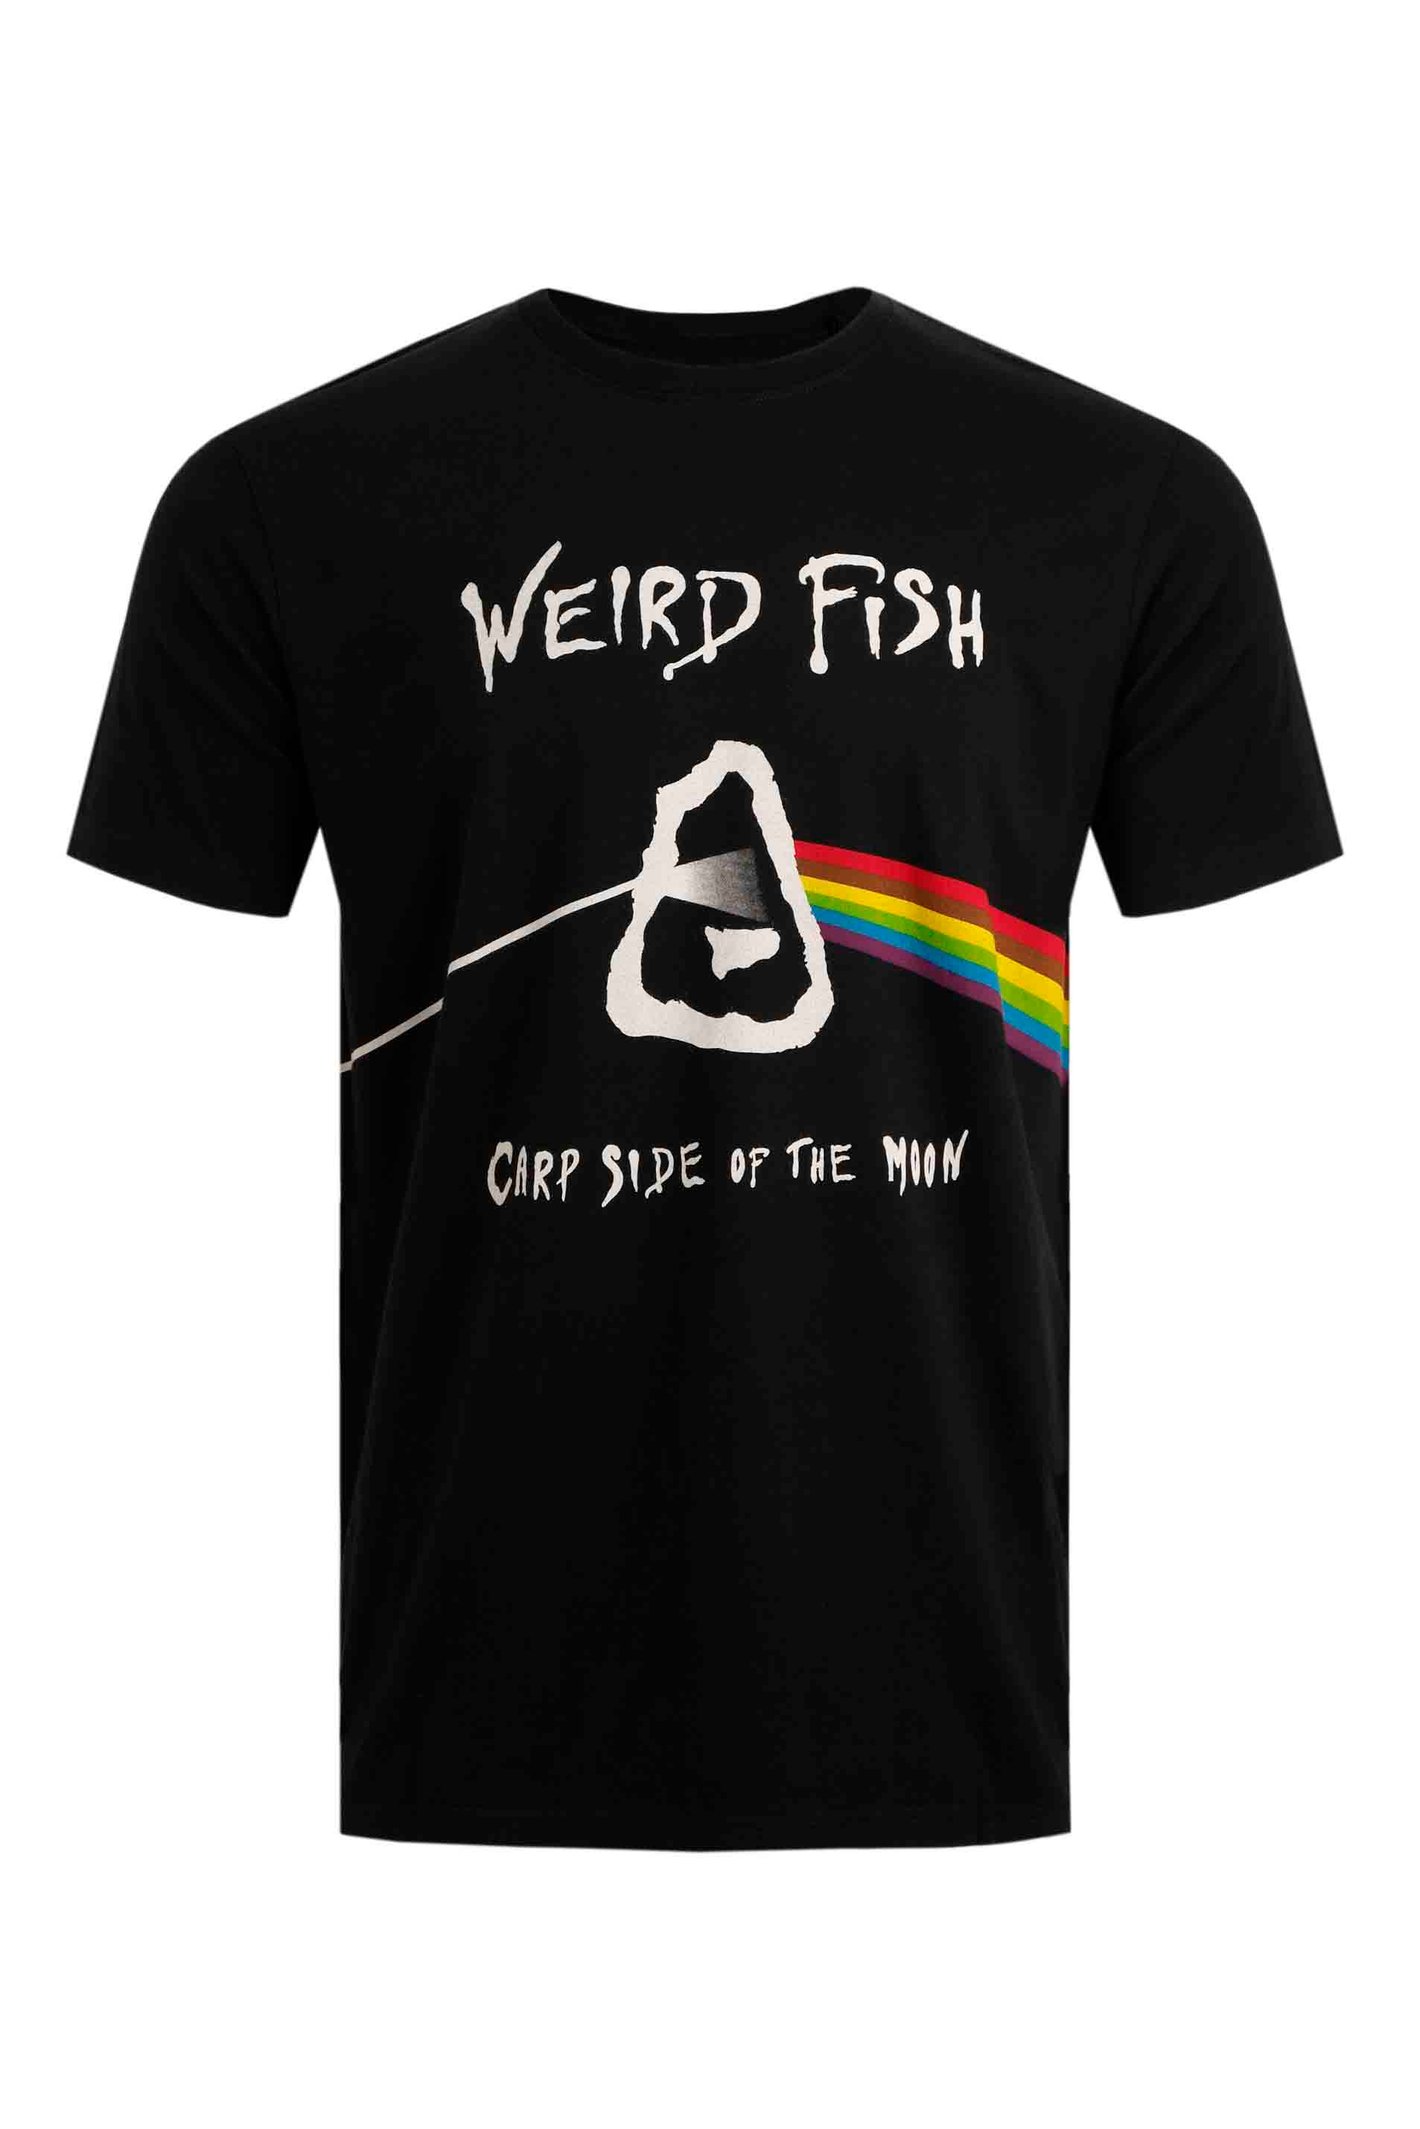 Weird Fish Carp Side Artist T-Shirt Black Size 4XL